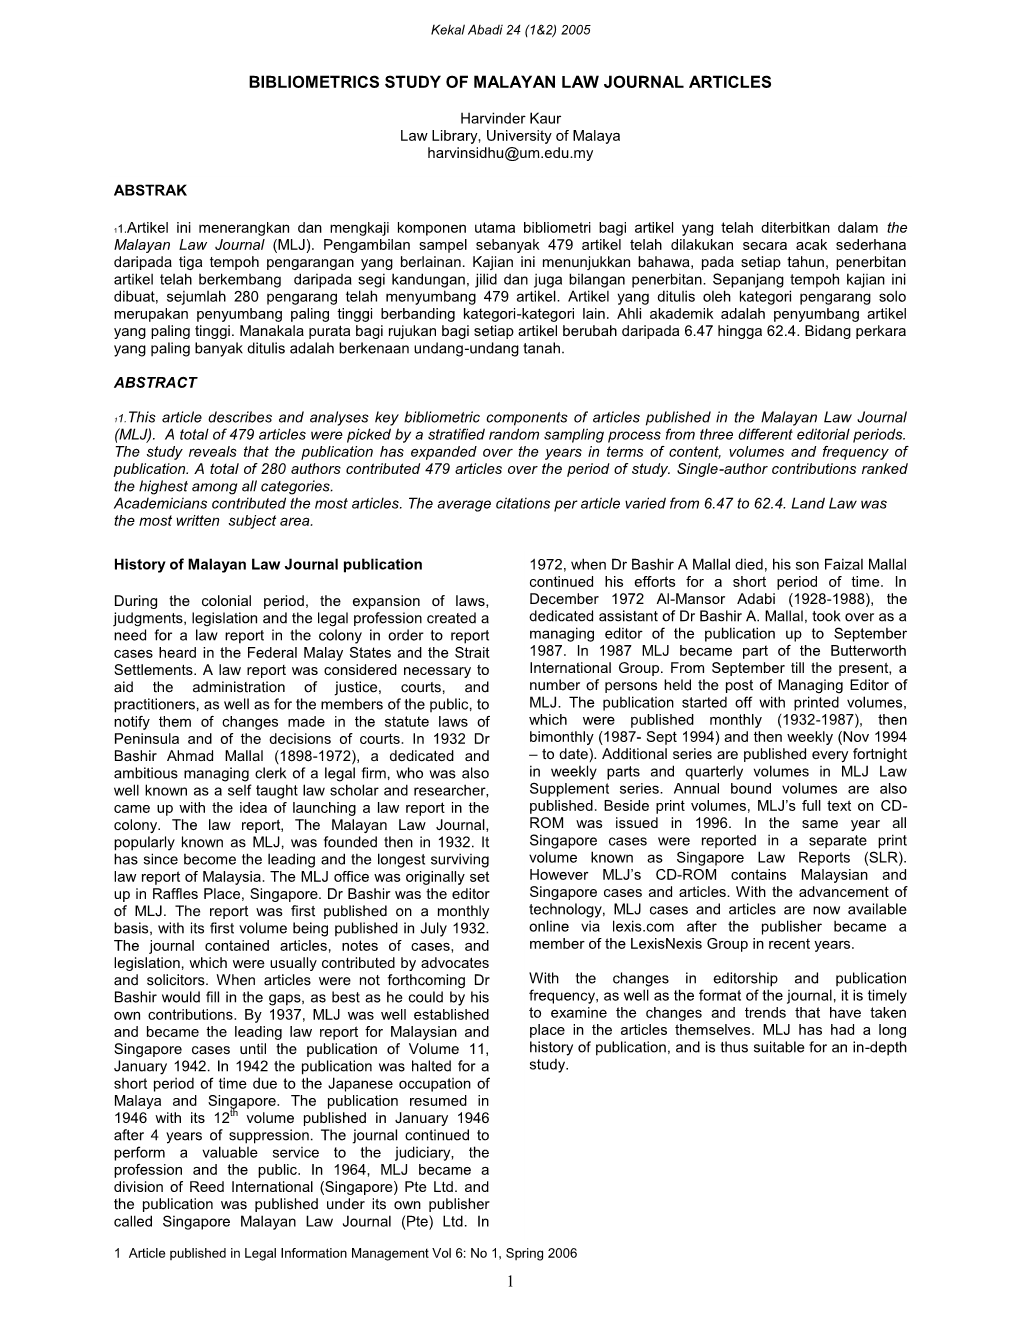 Bibliometrics Study of Malayan Law Journal Articles